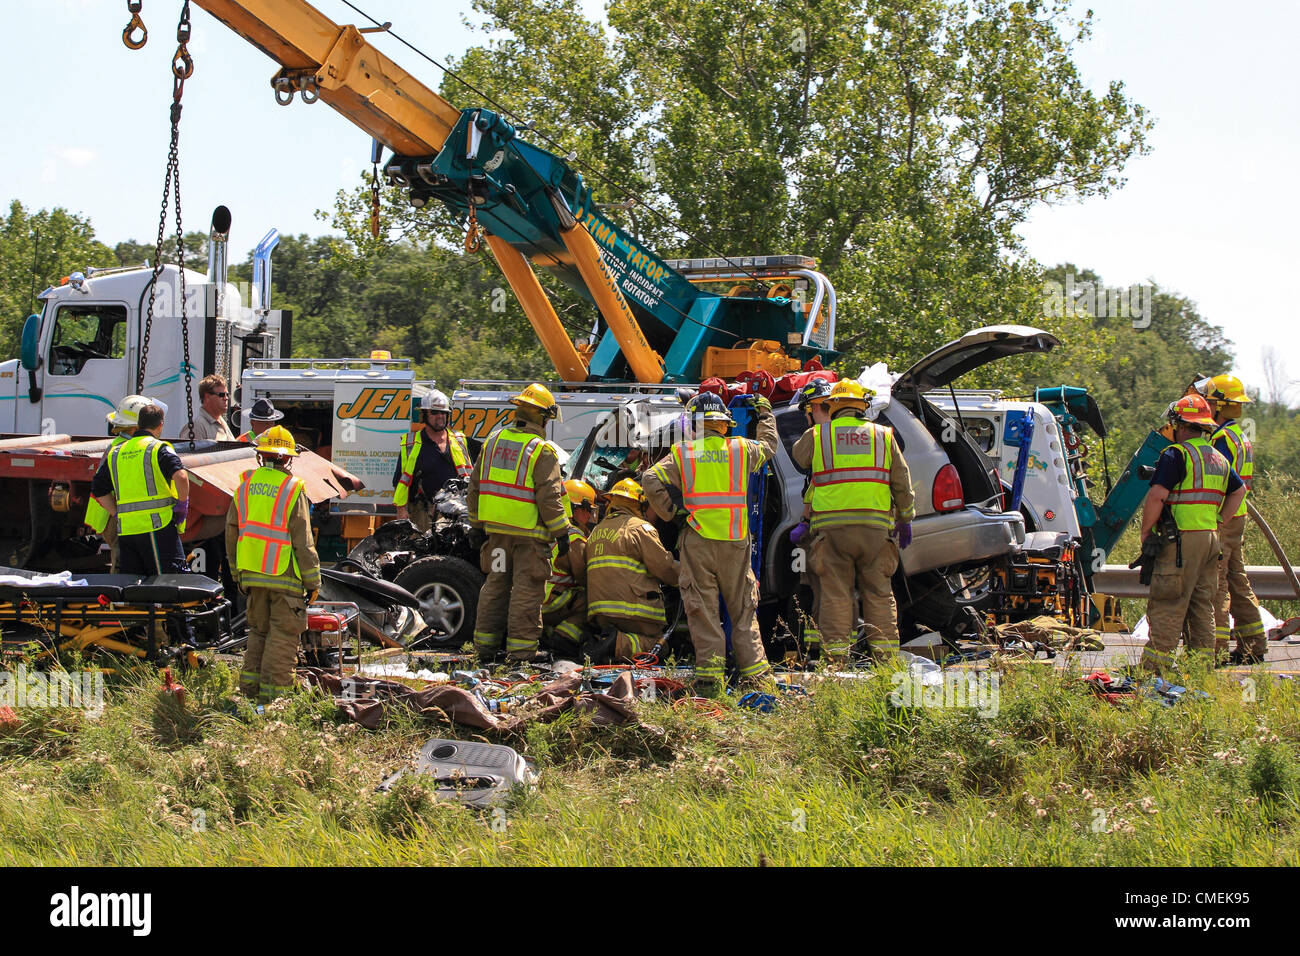 Montag, 30. Juli 2012--Emergency Arbeiter versuchen, den Treiber ein Sport Utility Vehicle zu befreien, die in der Rückseite des Semi-Tieflader auf i-94 nahe Meilenmarkierung 6 in Hudson, Wisconsin, USA stürzte. Mindestens eine Person starb bei dem Unfall. Stockfoto